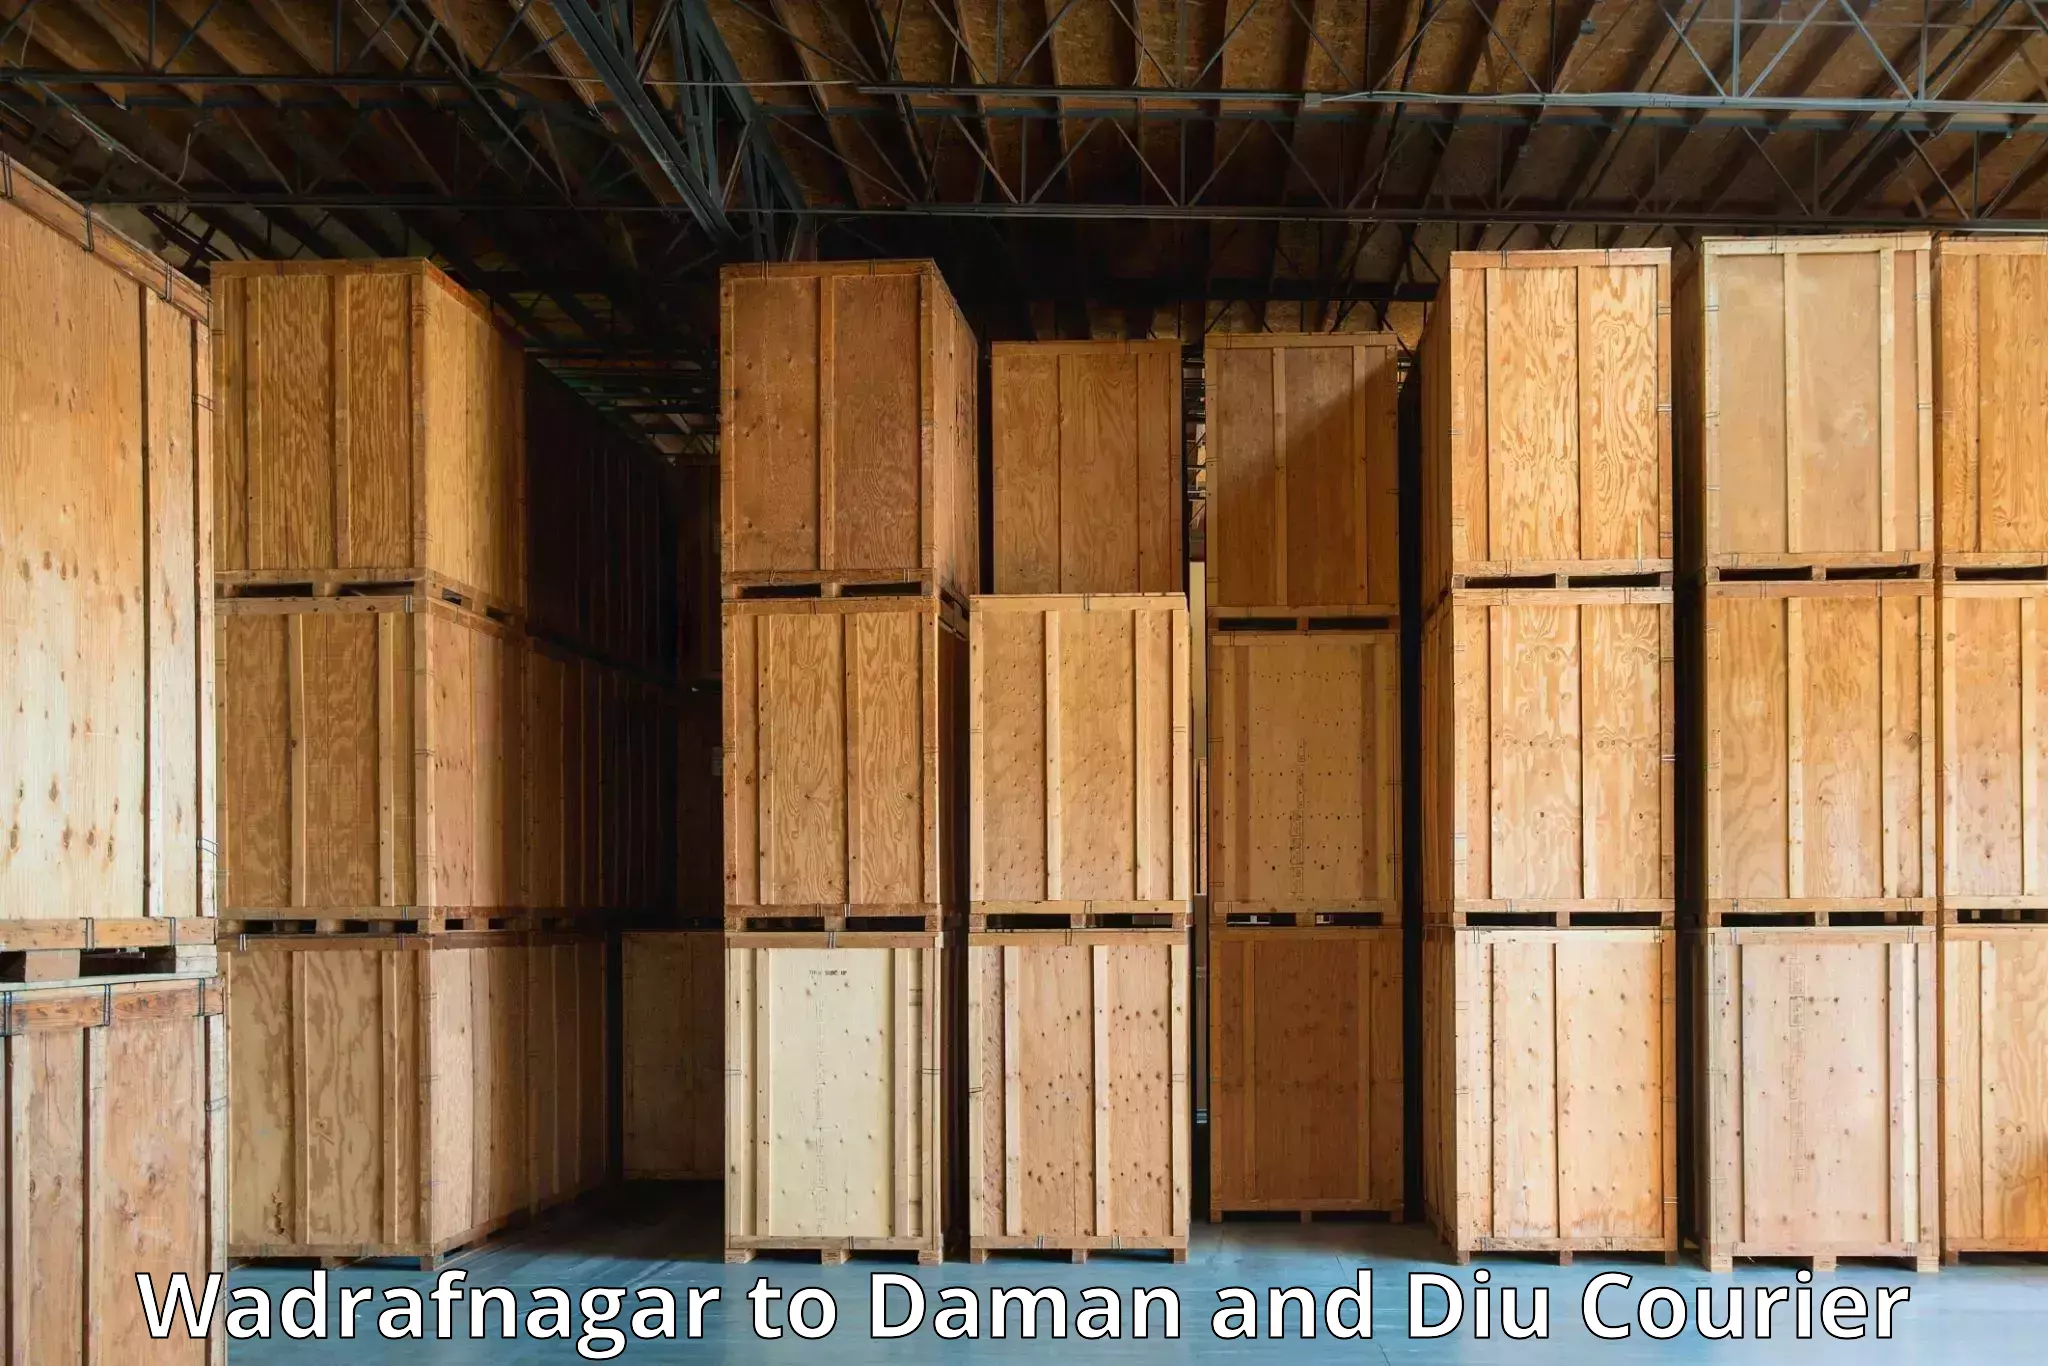 Logistics and distribution Wadrafnagar to Daman and Diu